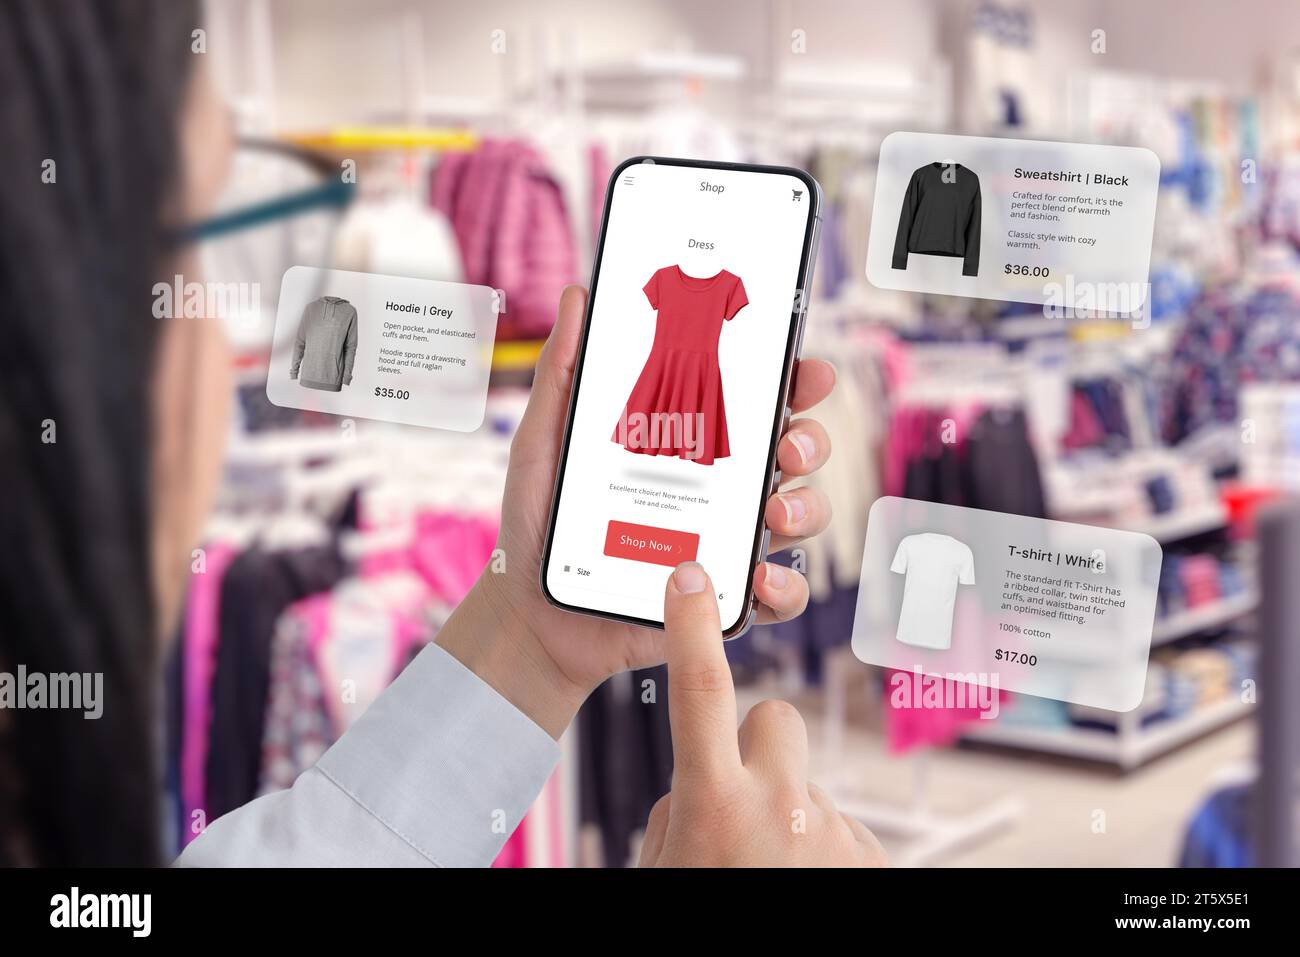 Boutique de vêtements grâce à une application smartphone avec des ballons autour suggérant des recommandations de vêtements Banque D'Images